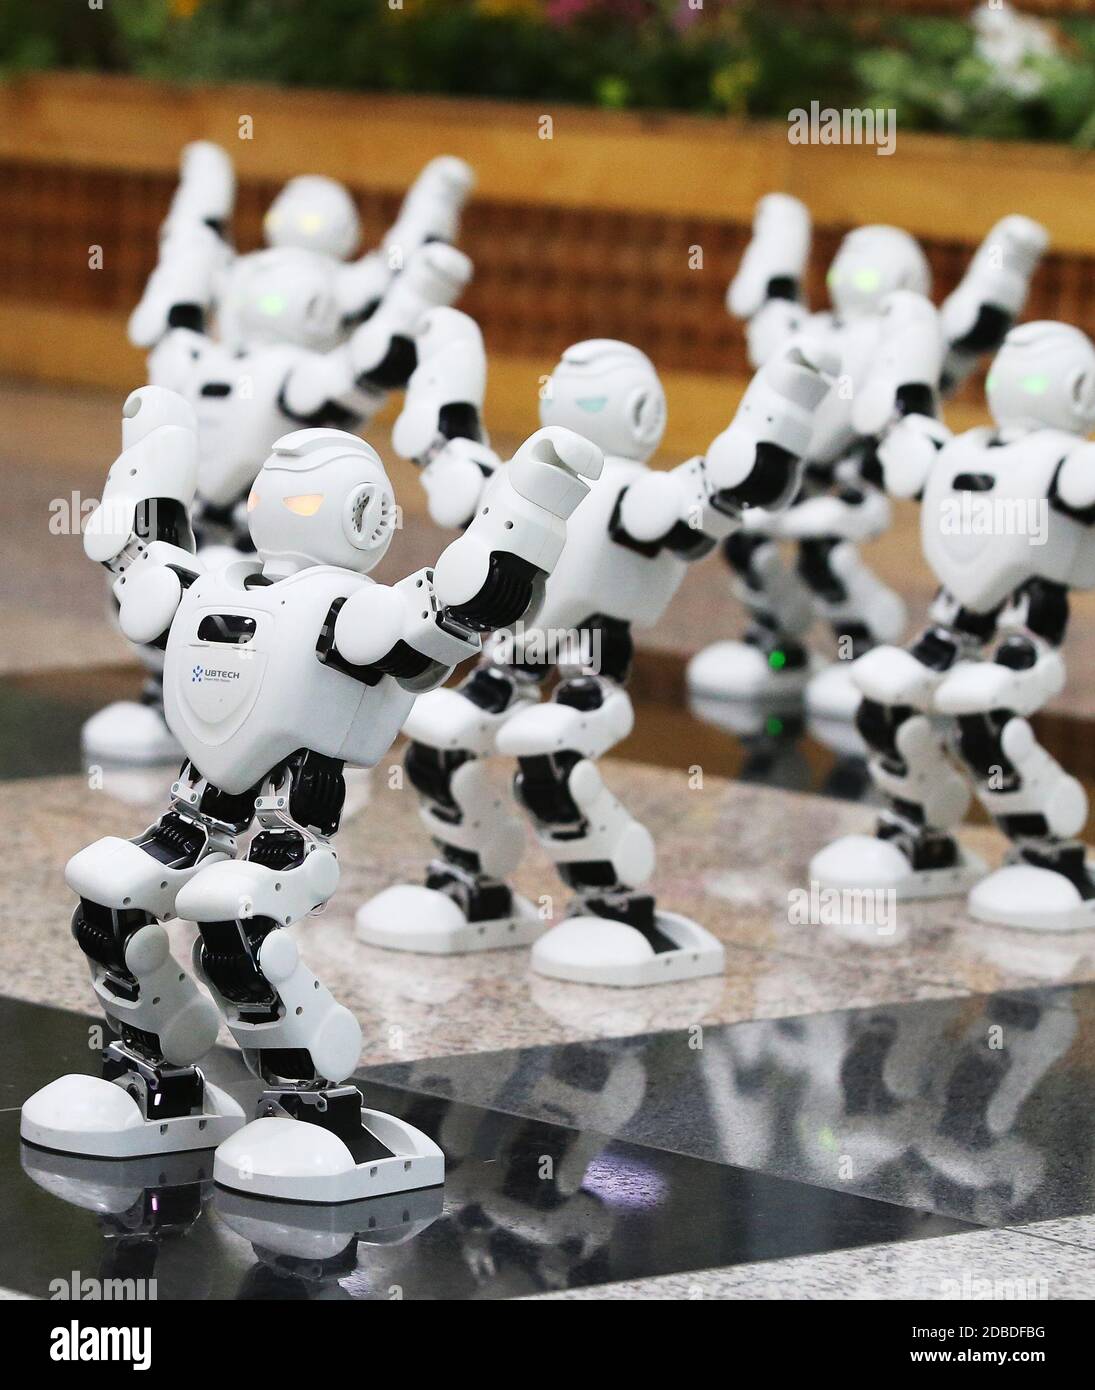 17 de noviembre de 2020. Robot dance Robots baila a la música en una  reunión educativa en Osan, al sur de Seúl, el 17 de noviembre de 2020.  Crédito: Yonhap/Newcom/Alamy Live News